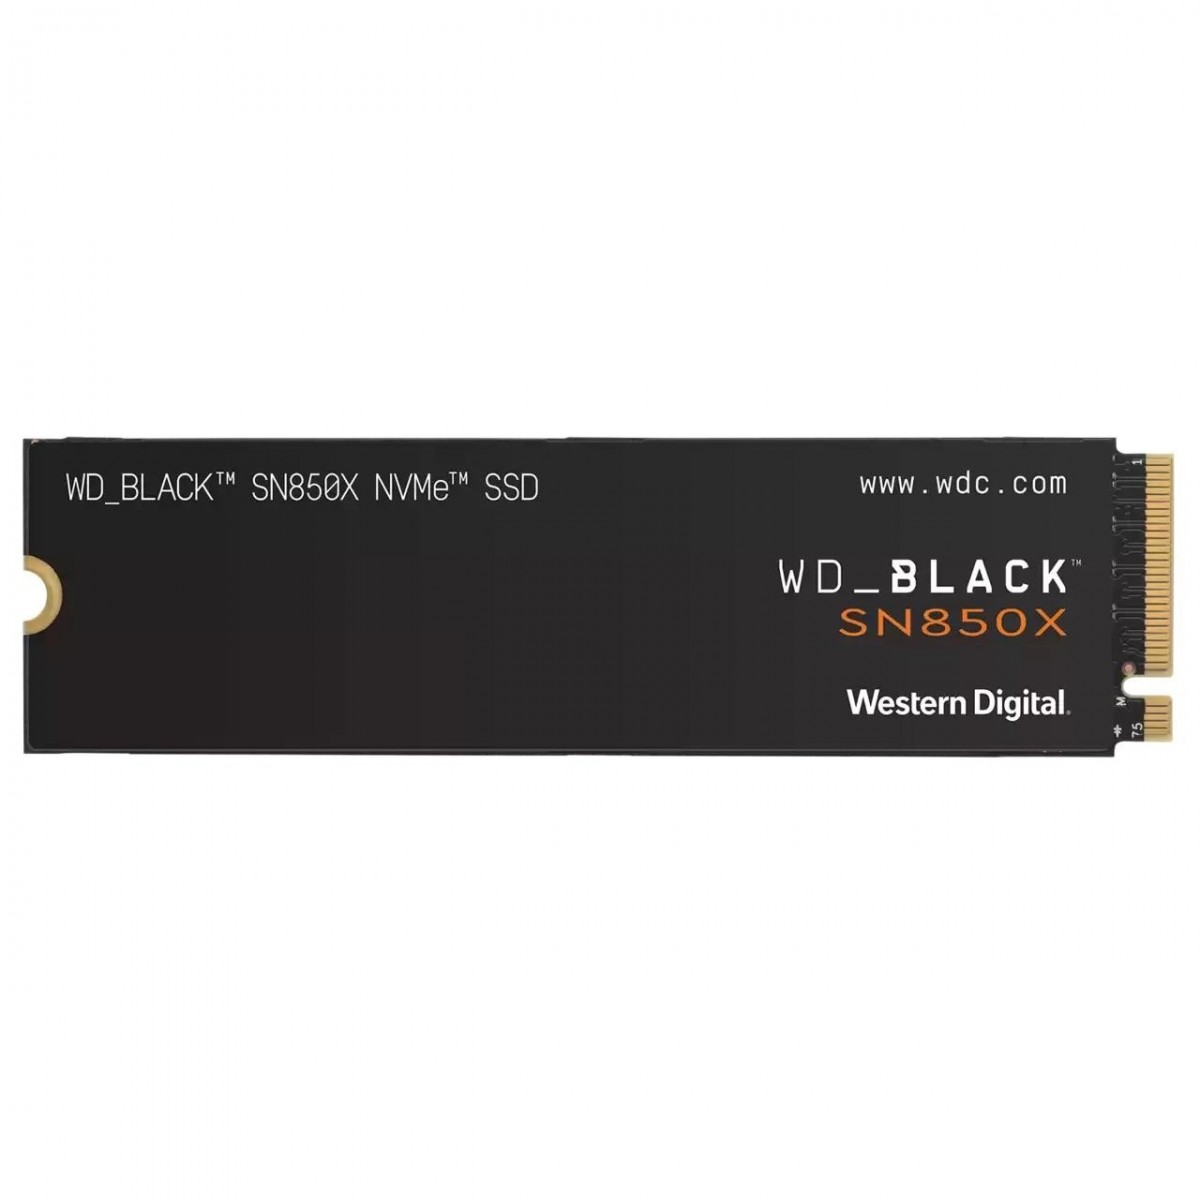 2TB BLACK NVME SSD M.2 PCIE-GEN3 5Y WARRANTY SN850X